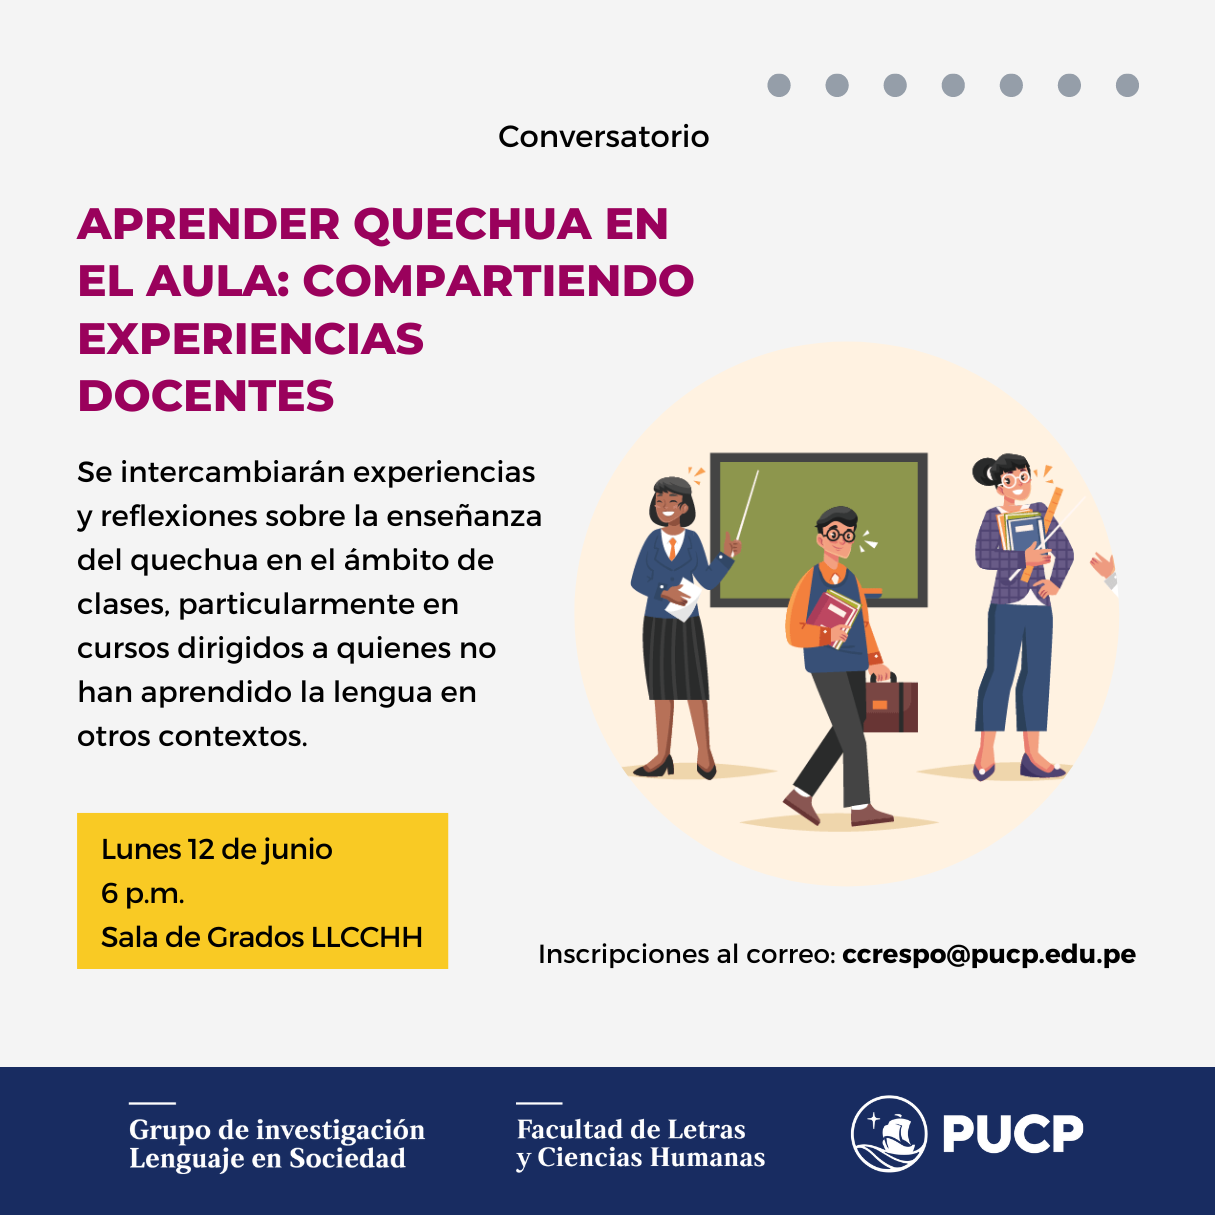 Conversatorio: “Aprender quechua en el aula: compartiendo experiencias docentes”